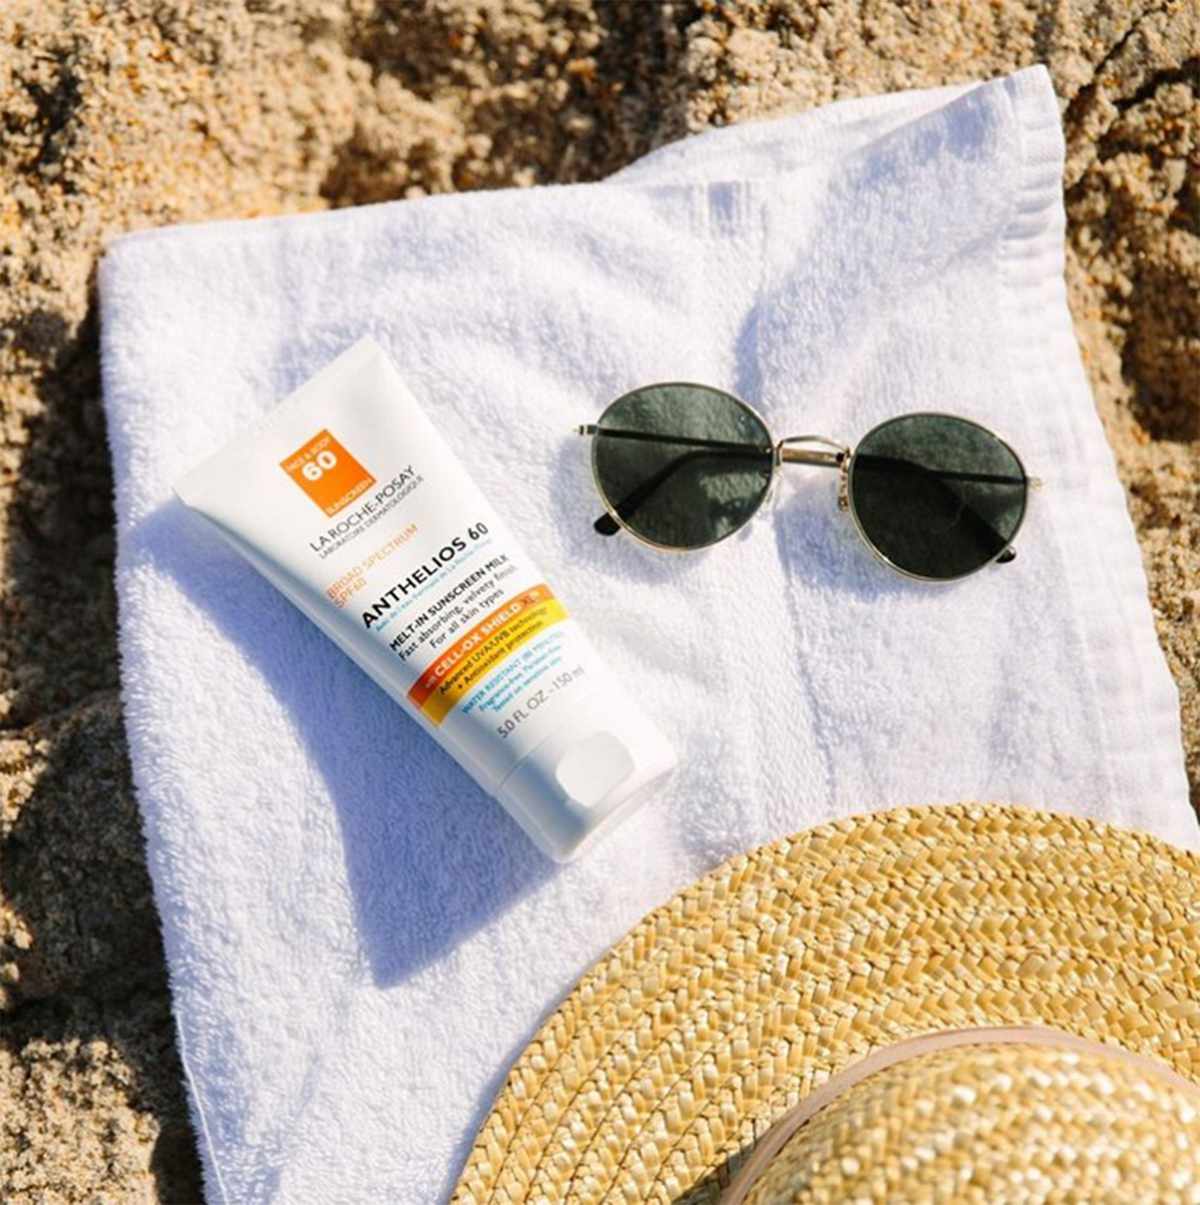 La Roche-Posay sunscreen